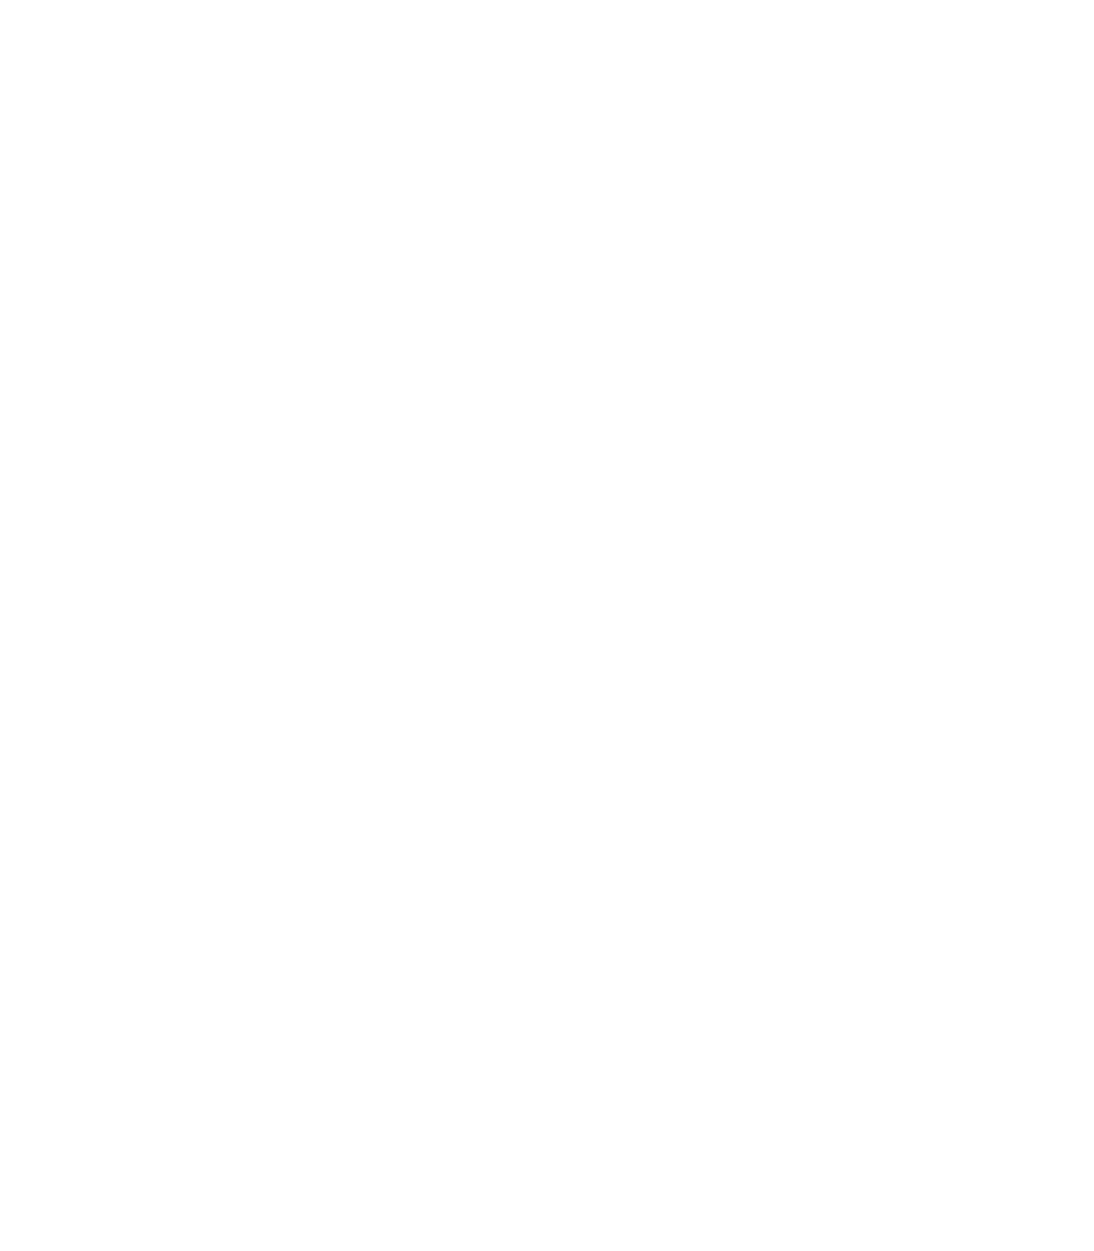 Czysty Bałtyk, Stowarzyszenie Czysta Polska